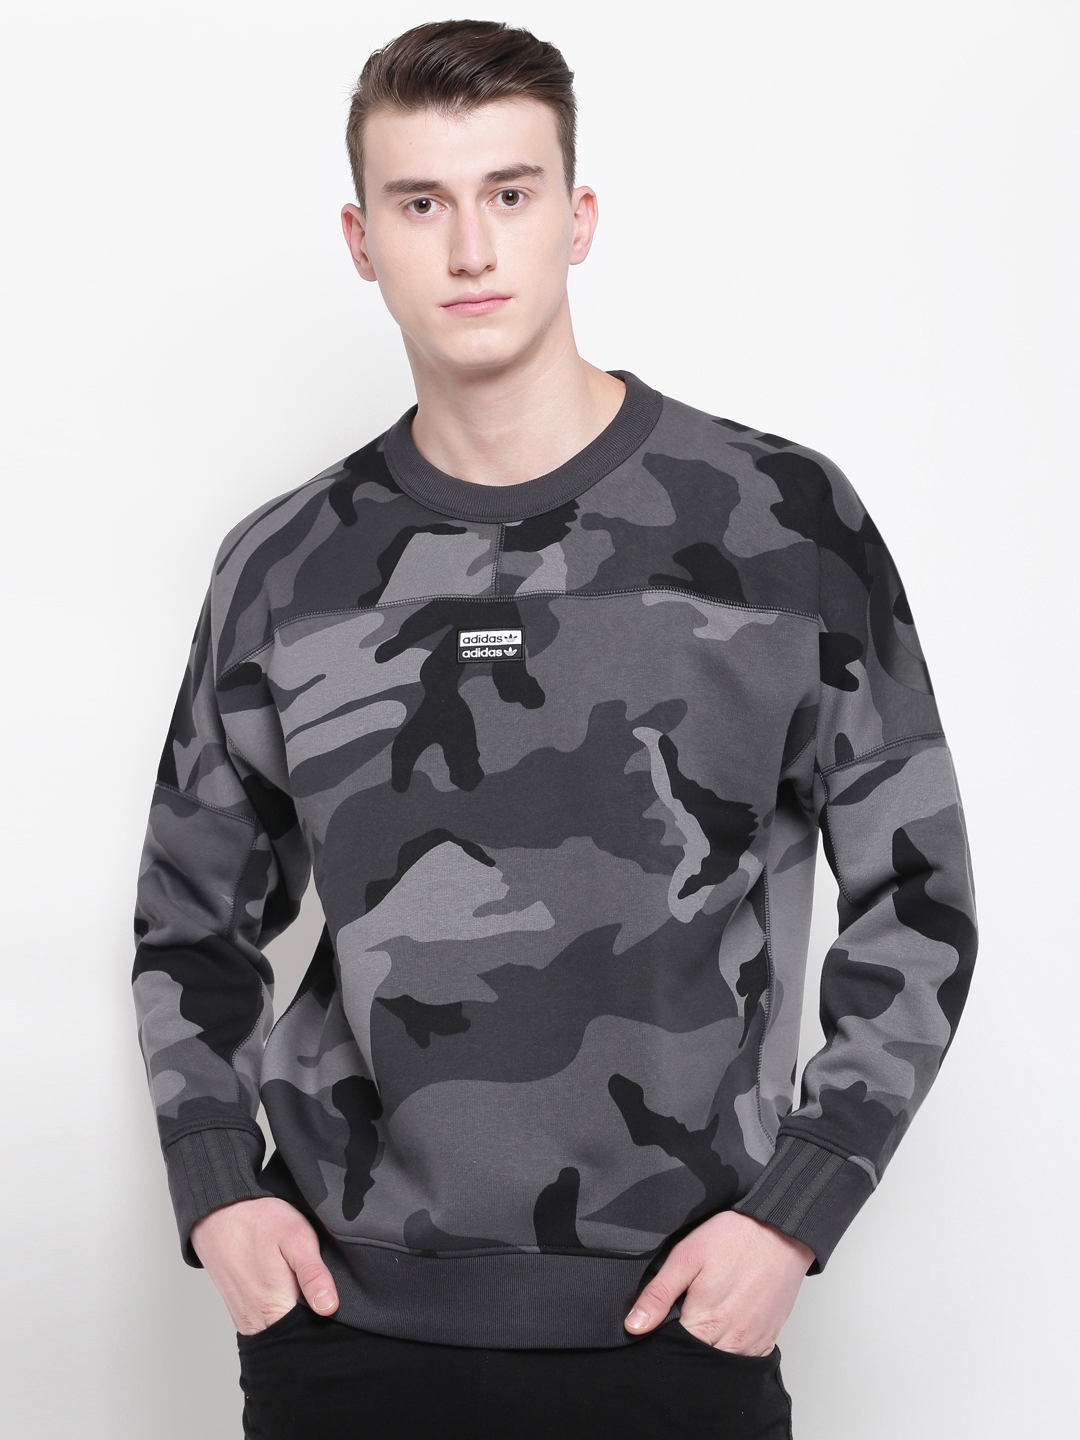 Buy ADIDAS Originals Men Grey Camouflage Print R.Y.V. Sweatshirt - Sweatshirts for Men 10528690 | Myntra